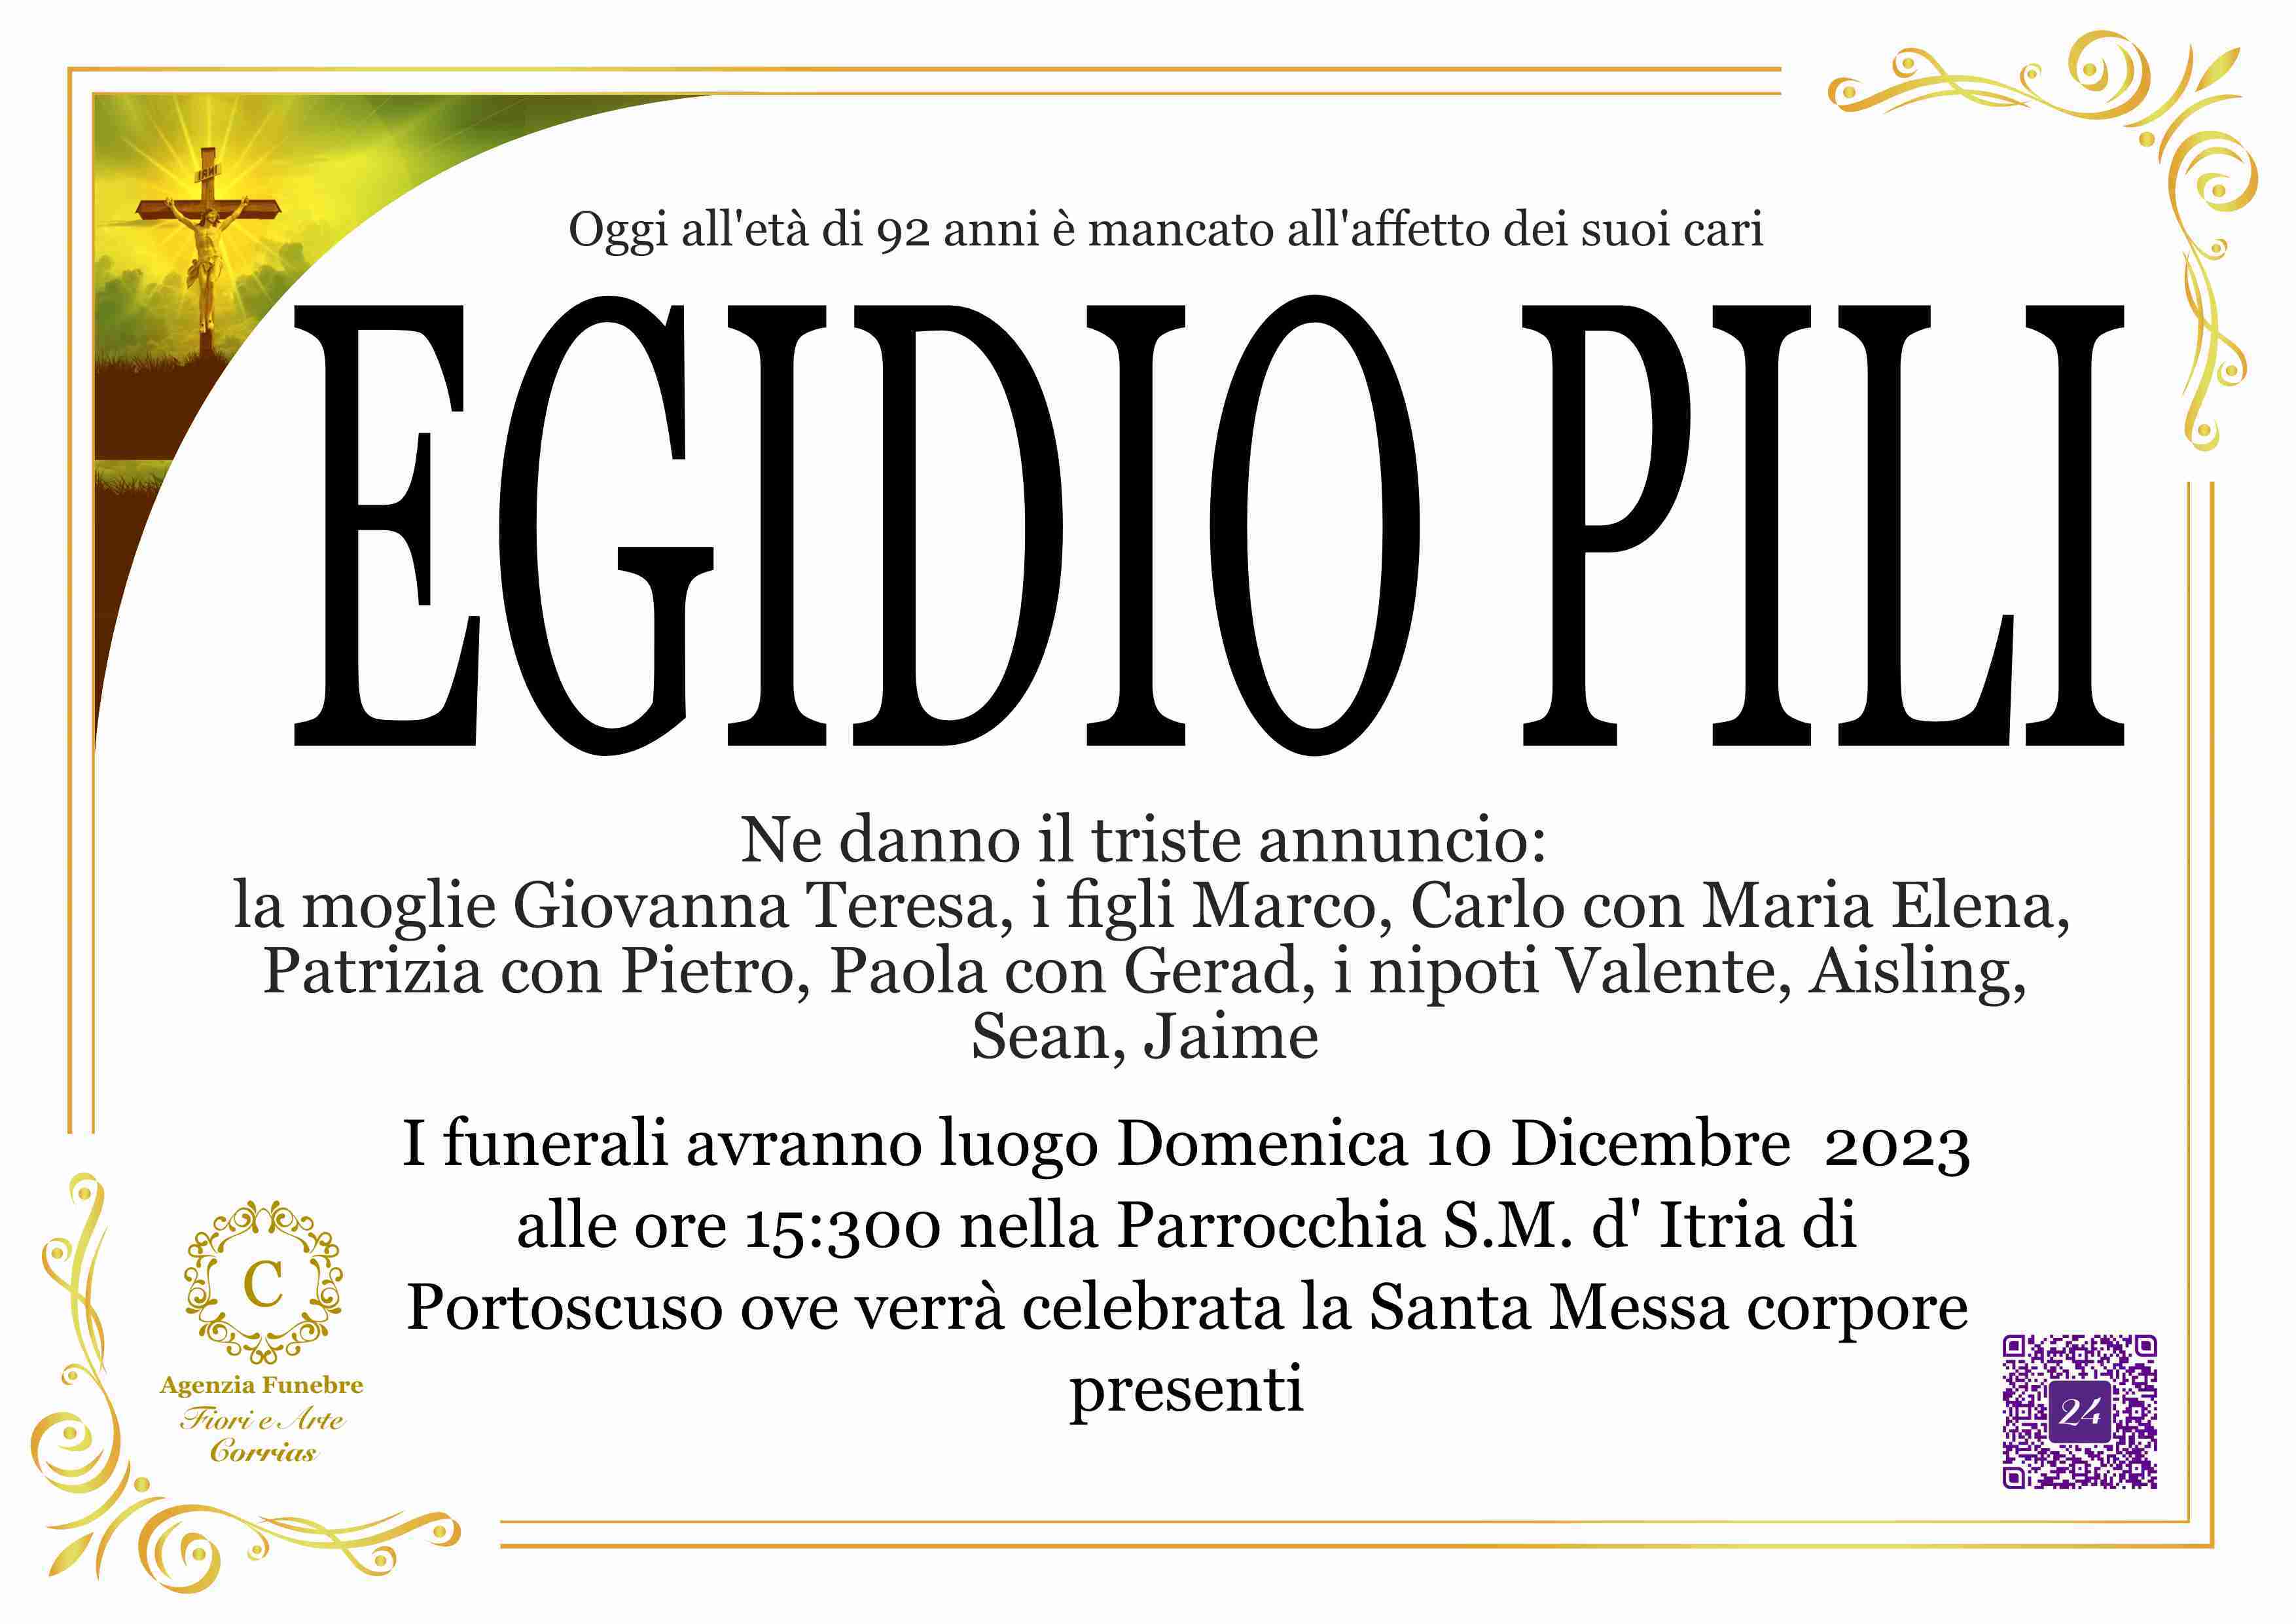 Egidio Pili